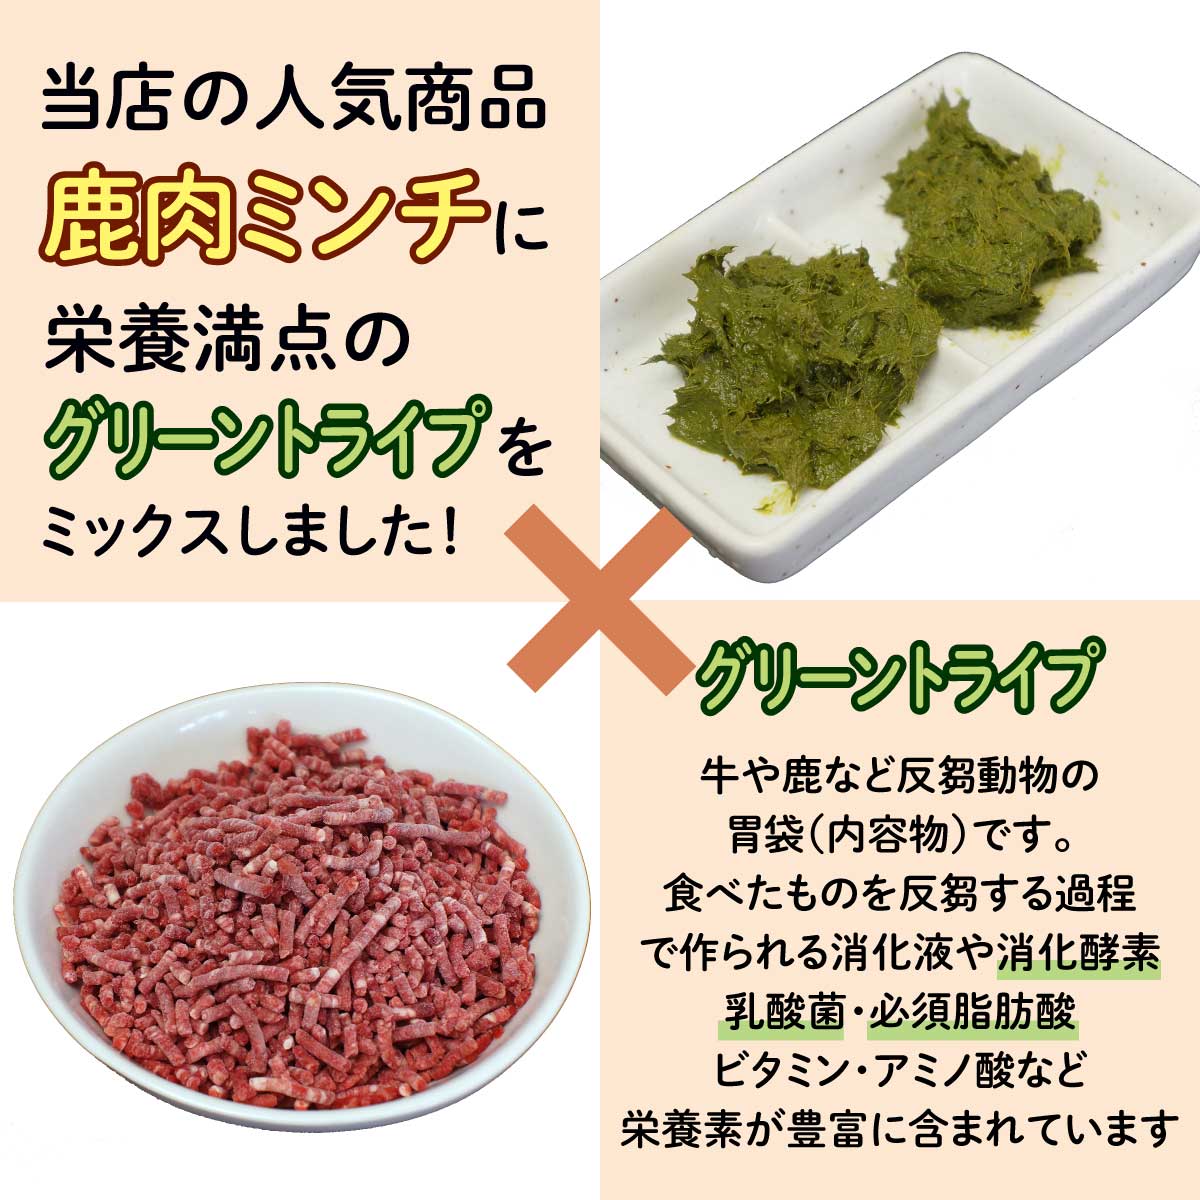 市場 ペット用 北海道稚内産 エゾ鹿ミックスミンチ エゾシカ肉 500g グリーントライプ 無添加